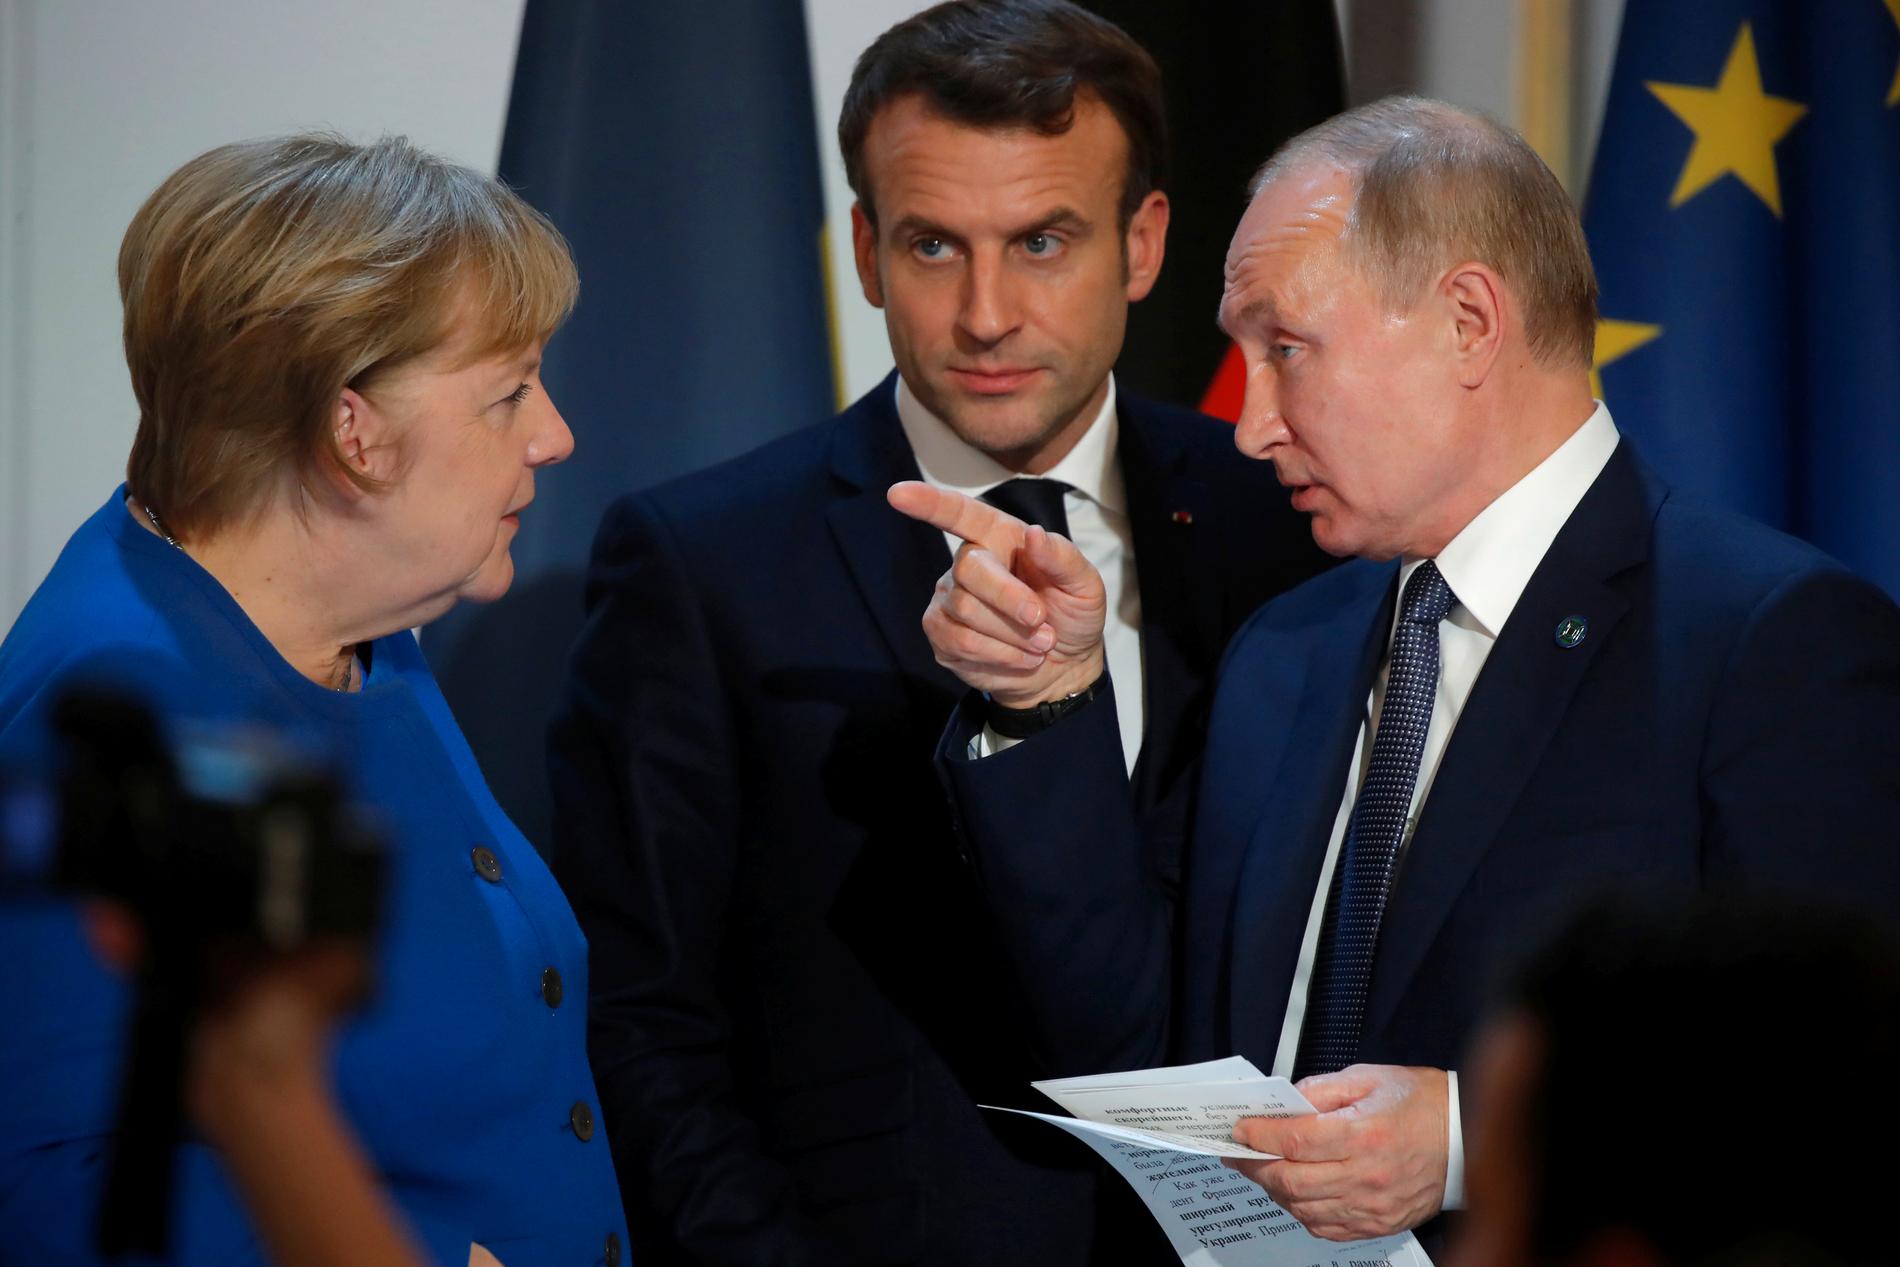 Tysklands förbundskansler Angela Merkel i samspråk med Vladimir Putin i Paris på måndagskvällen, med Frankrikes president Emmanuel Macron i bakgrunden.